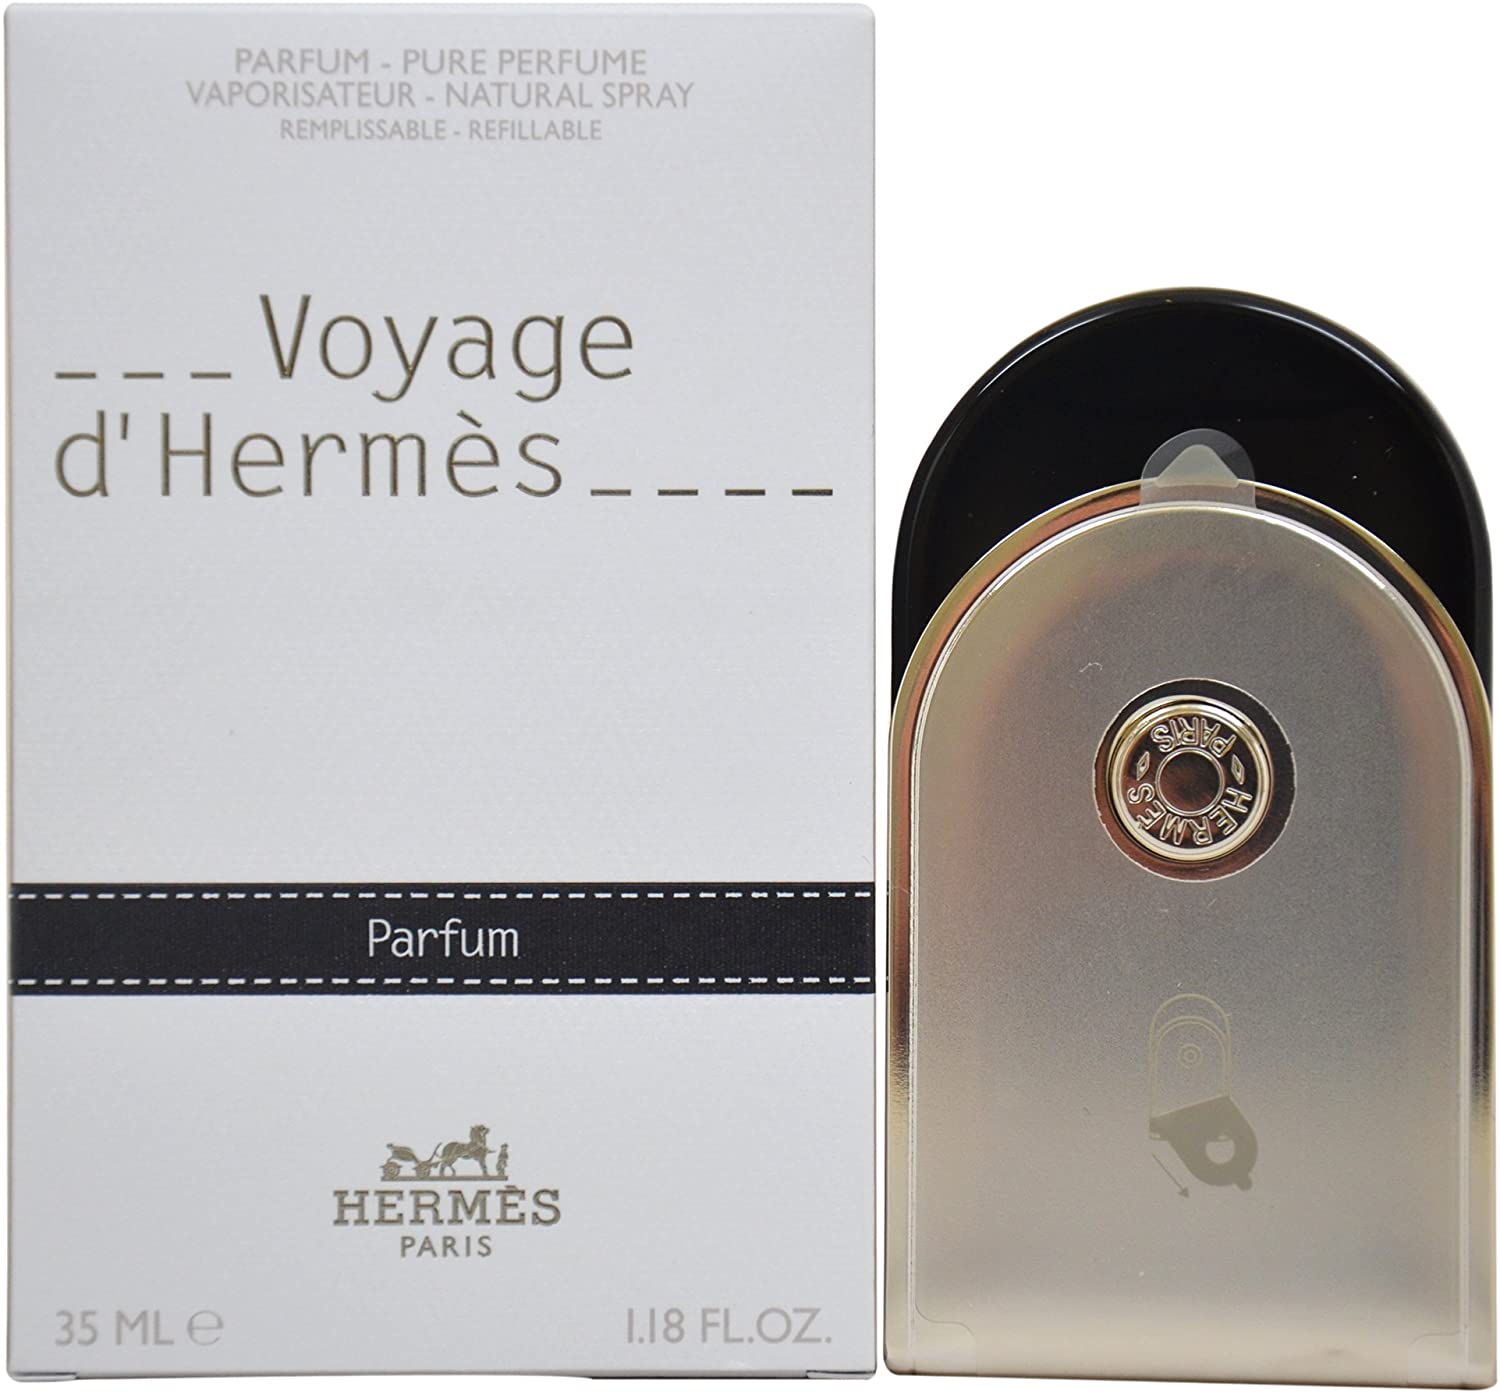 HERMES	VOYAGE D’HERMES PURE PERFUME 35mL